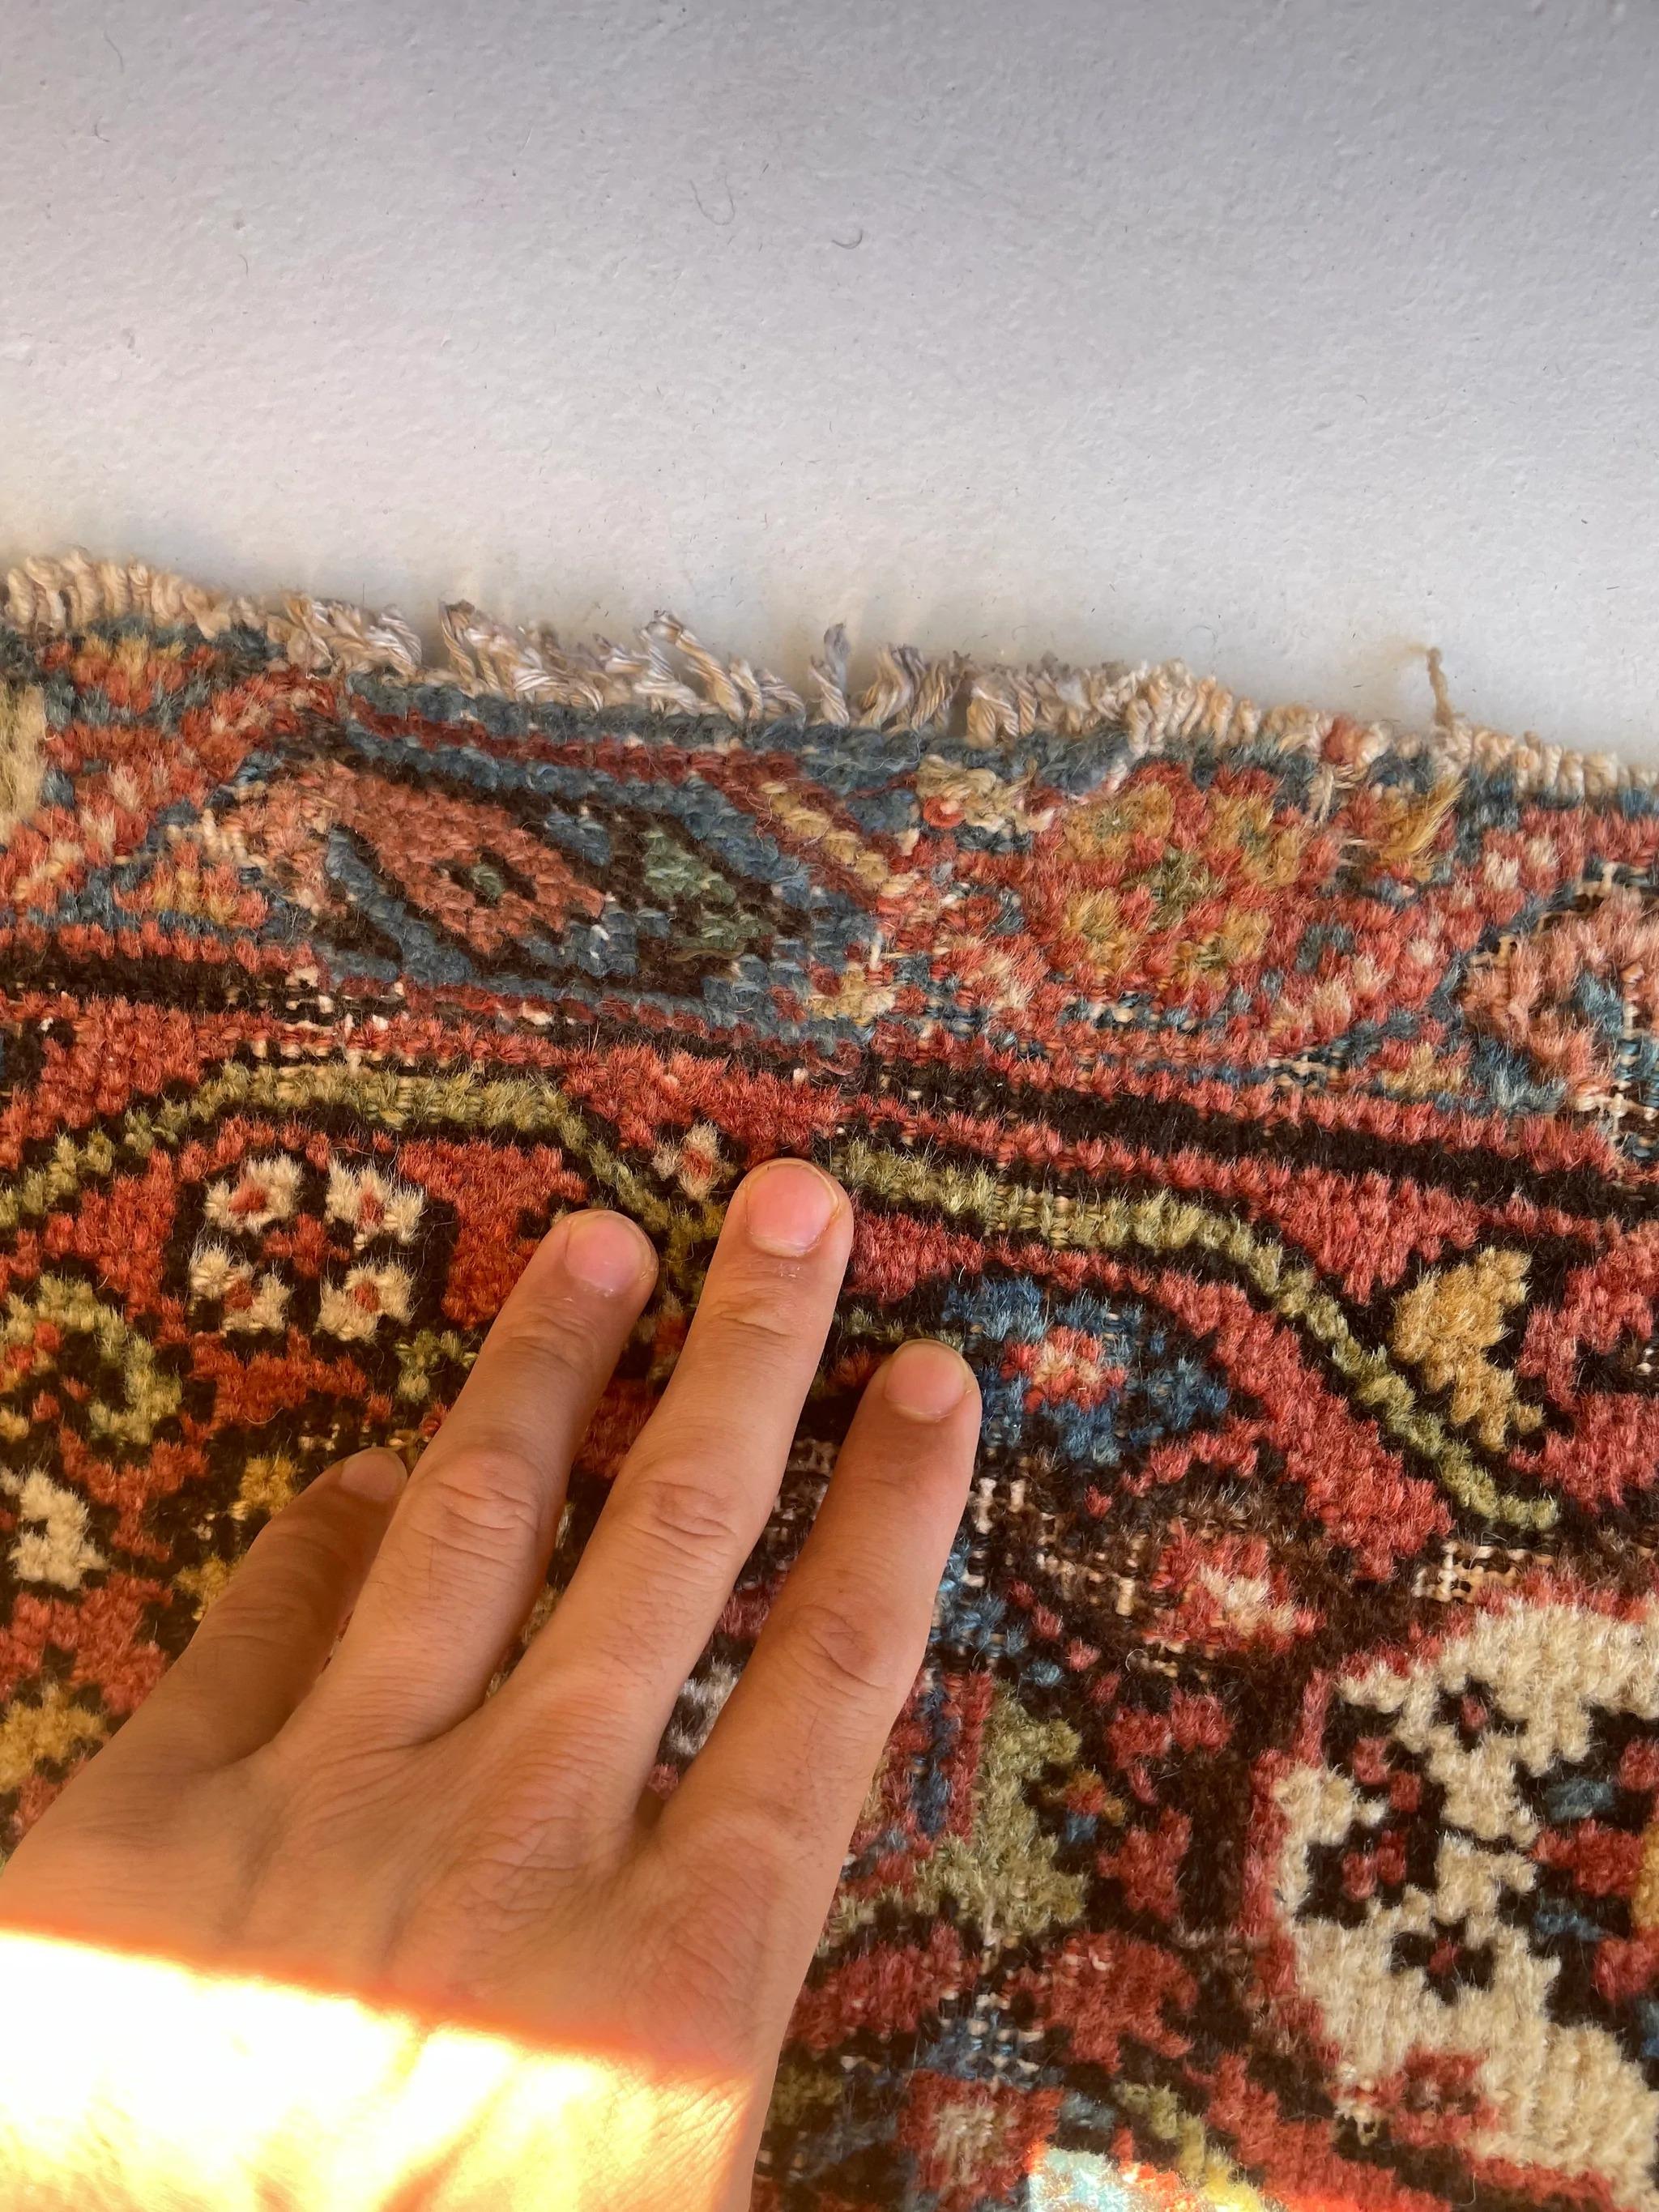 Antique Persian Carpet Rug in Deep Old-World Indigo, circa 1900-1915's For Sale 6